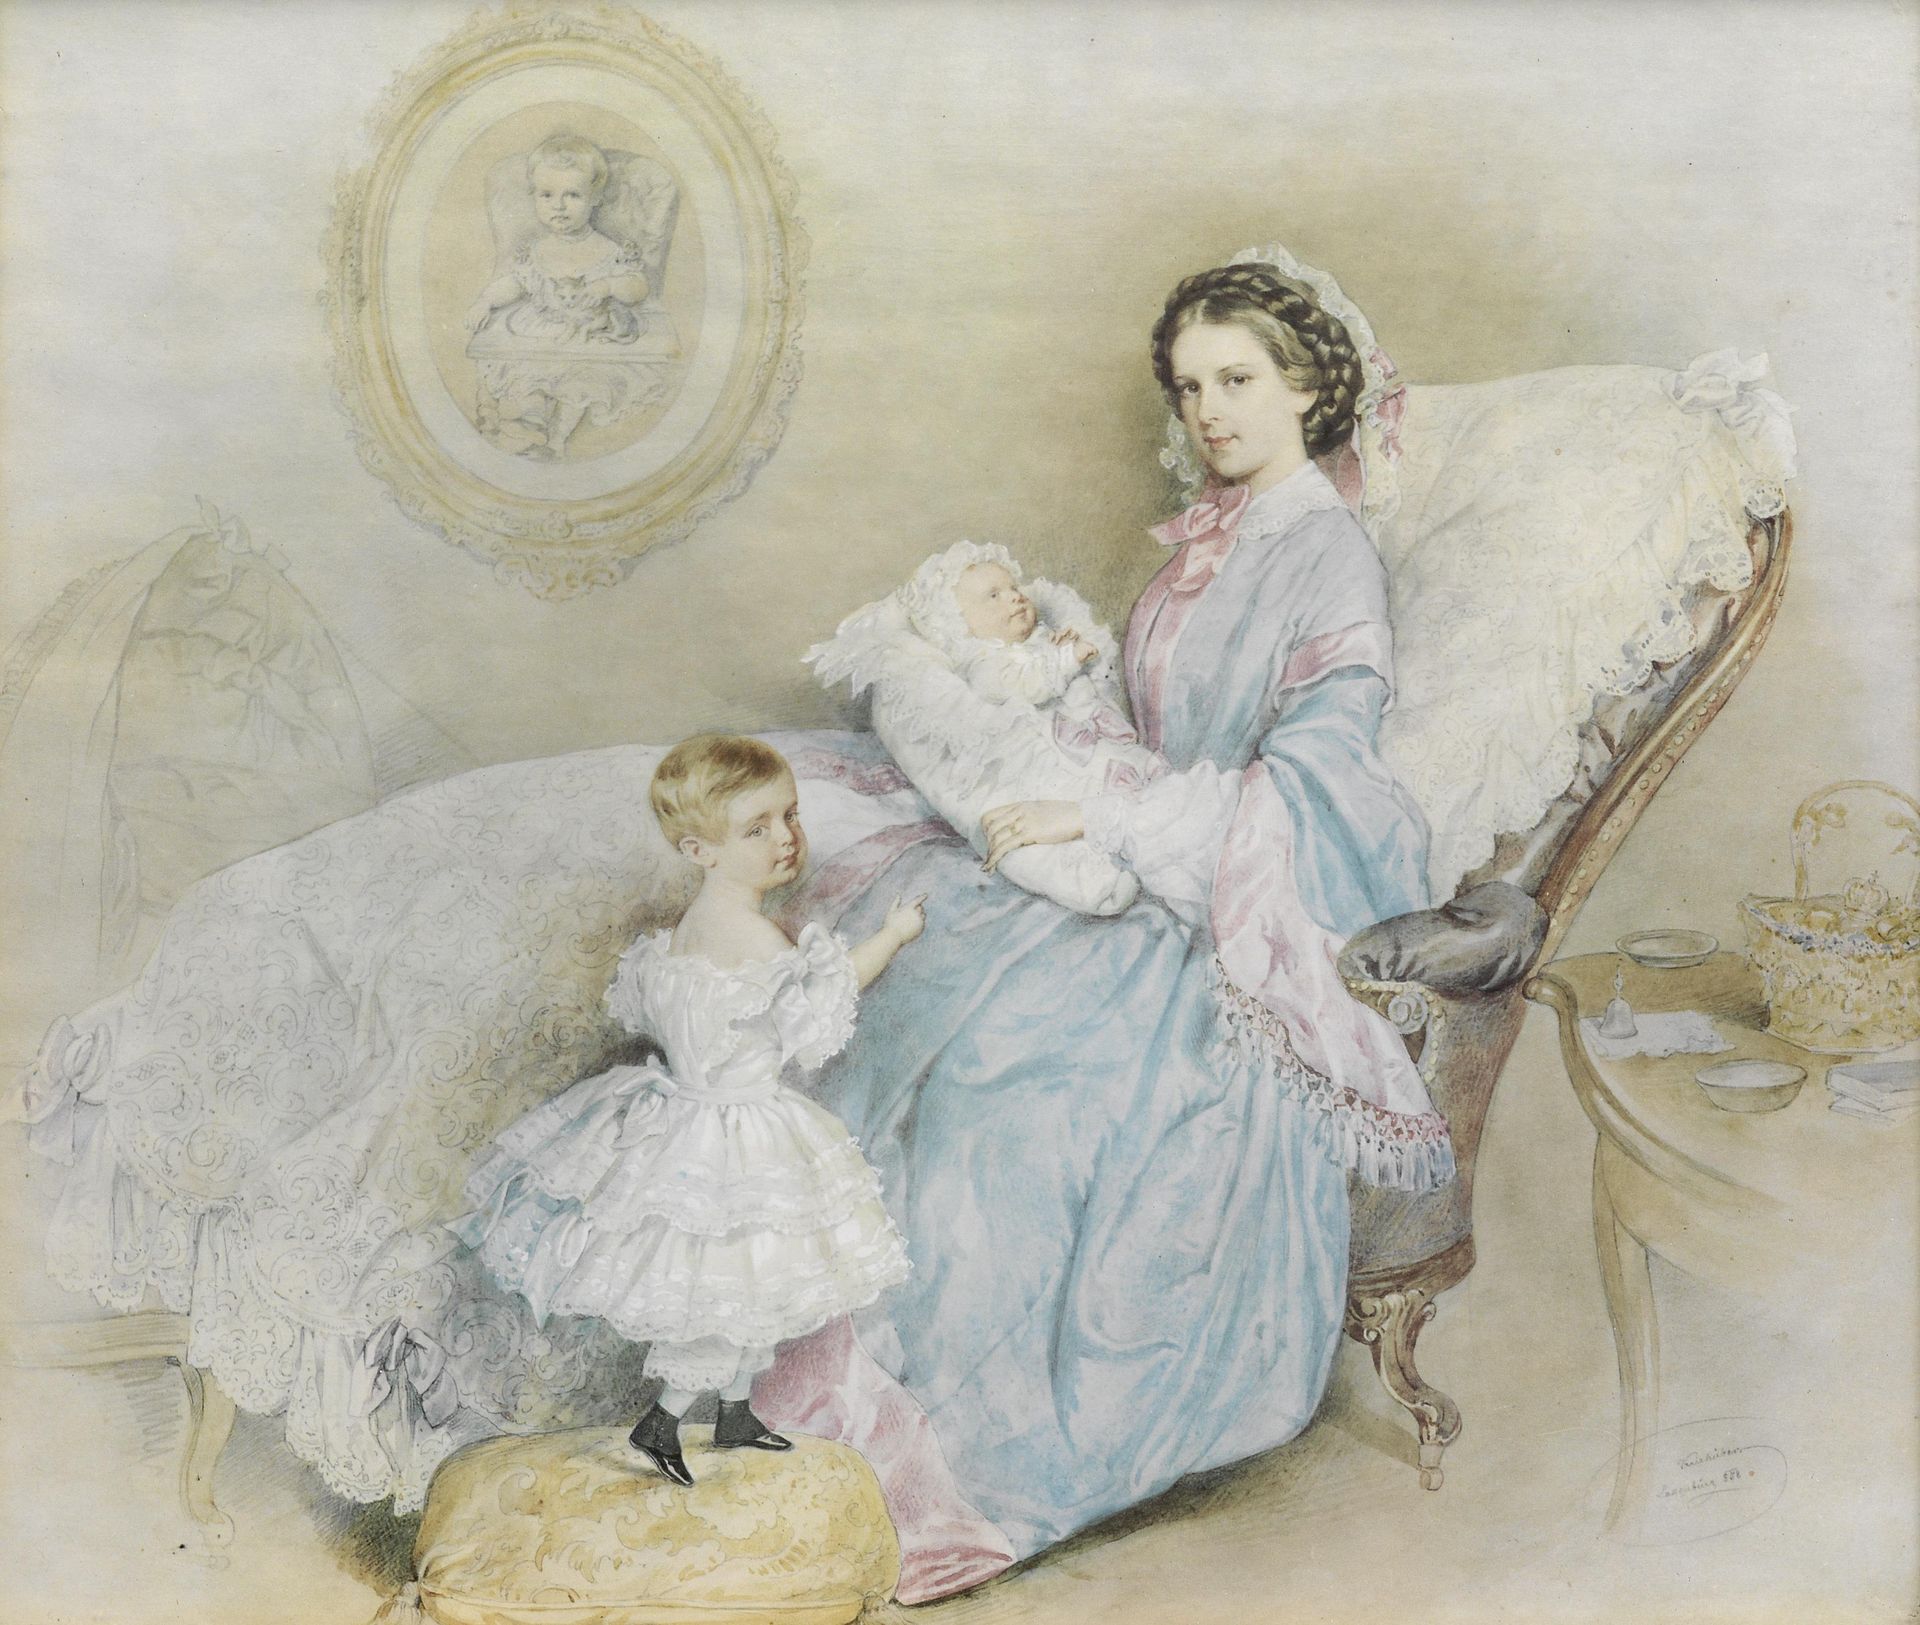 keizerin Sisi met haar kinderen in 1858. Gisela staat naast haar moeder die Rudolf vasthoudt. Op de